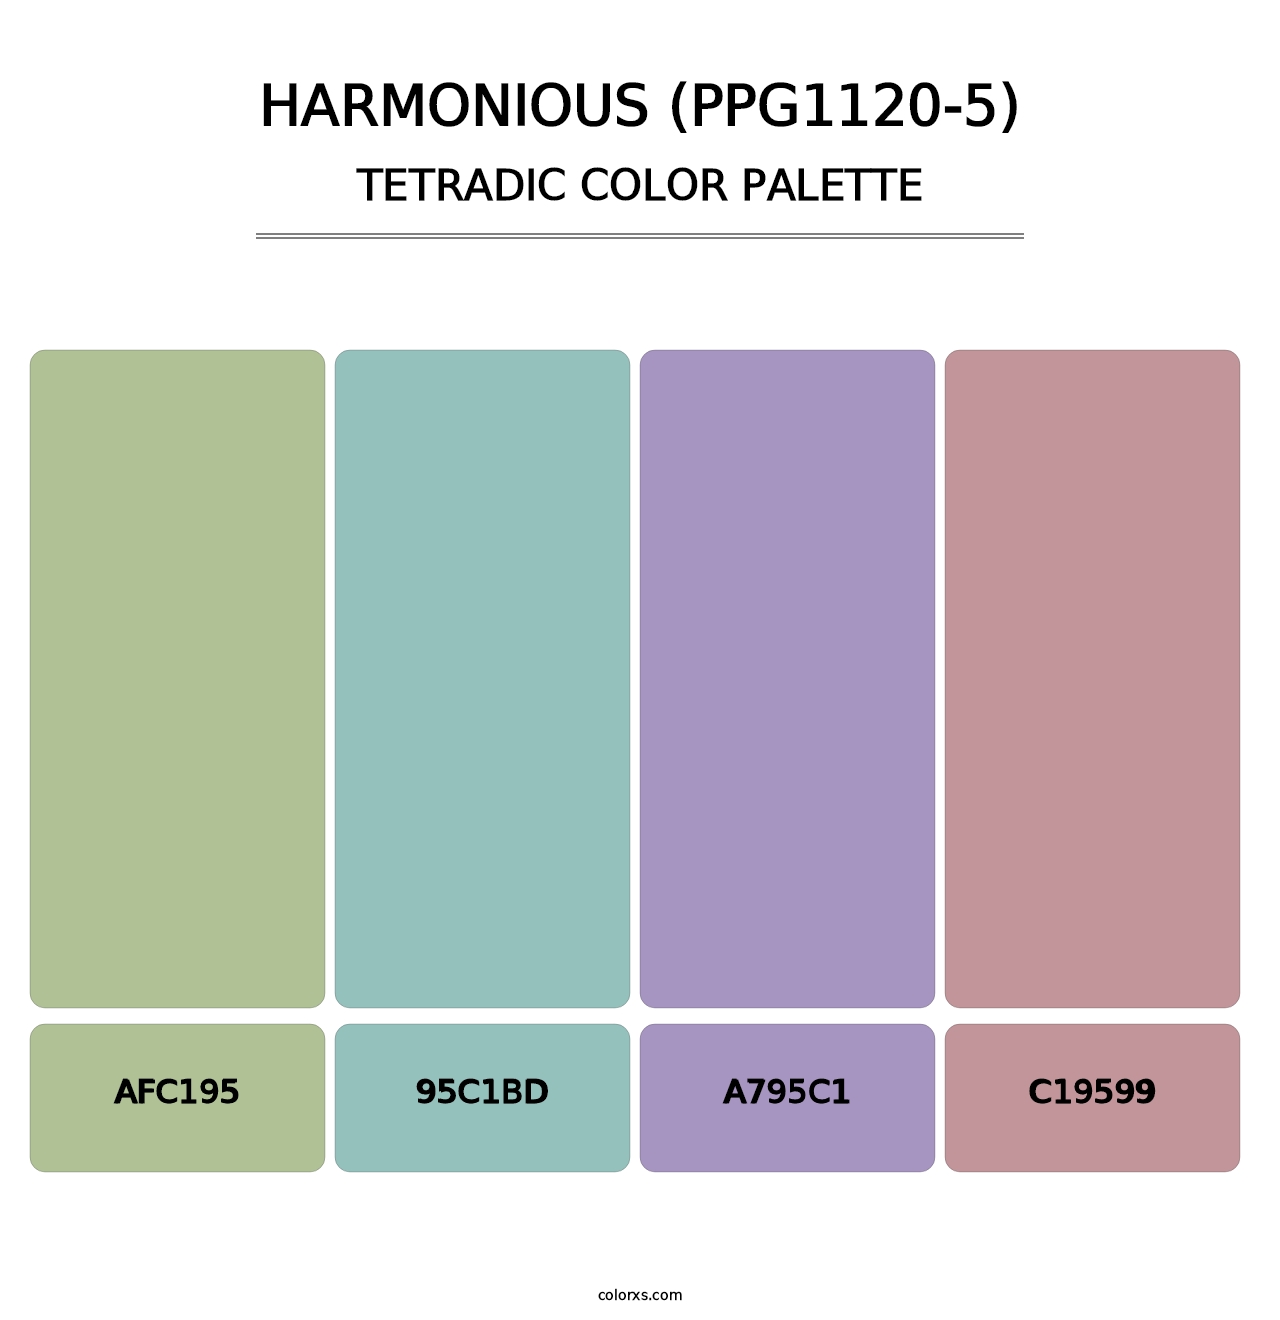 Harmonious (PPG1120-5) - Tetradic Color Palette